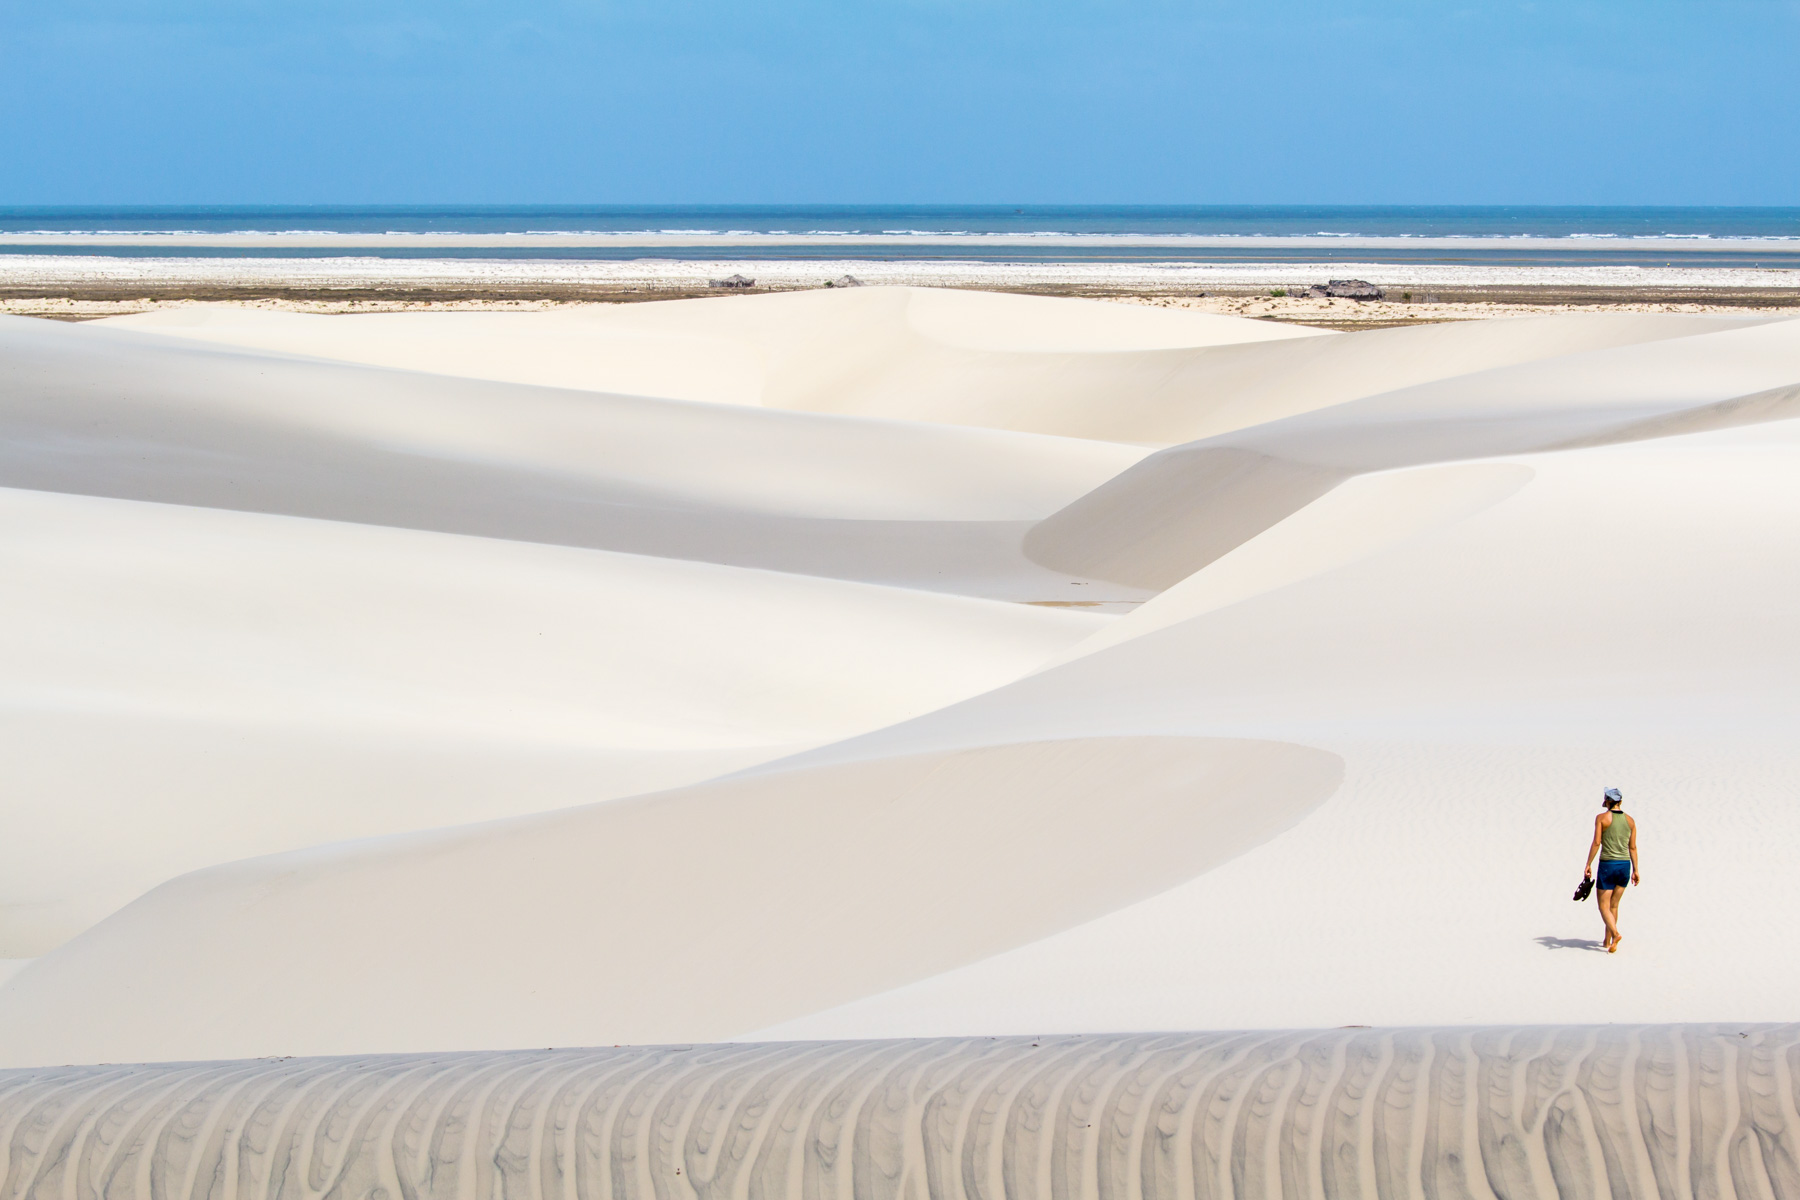 Désert et dunes de sable où une femme marche pied nu de dos. À l’horizon, on aperçoit l’océan.